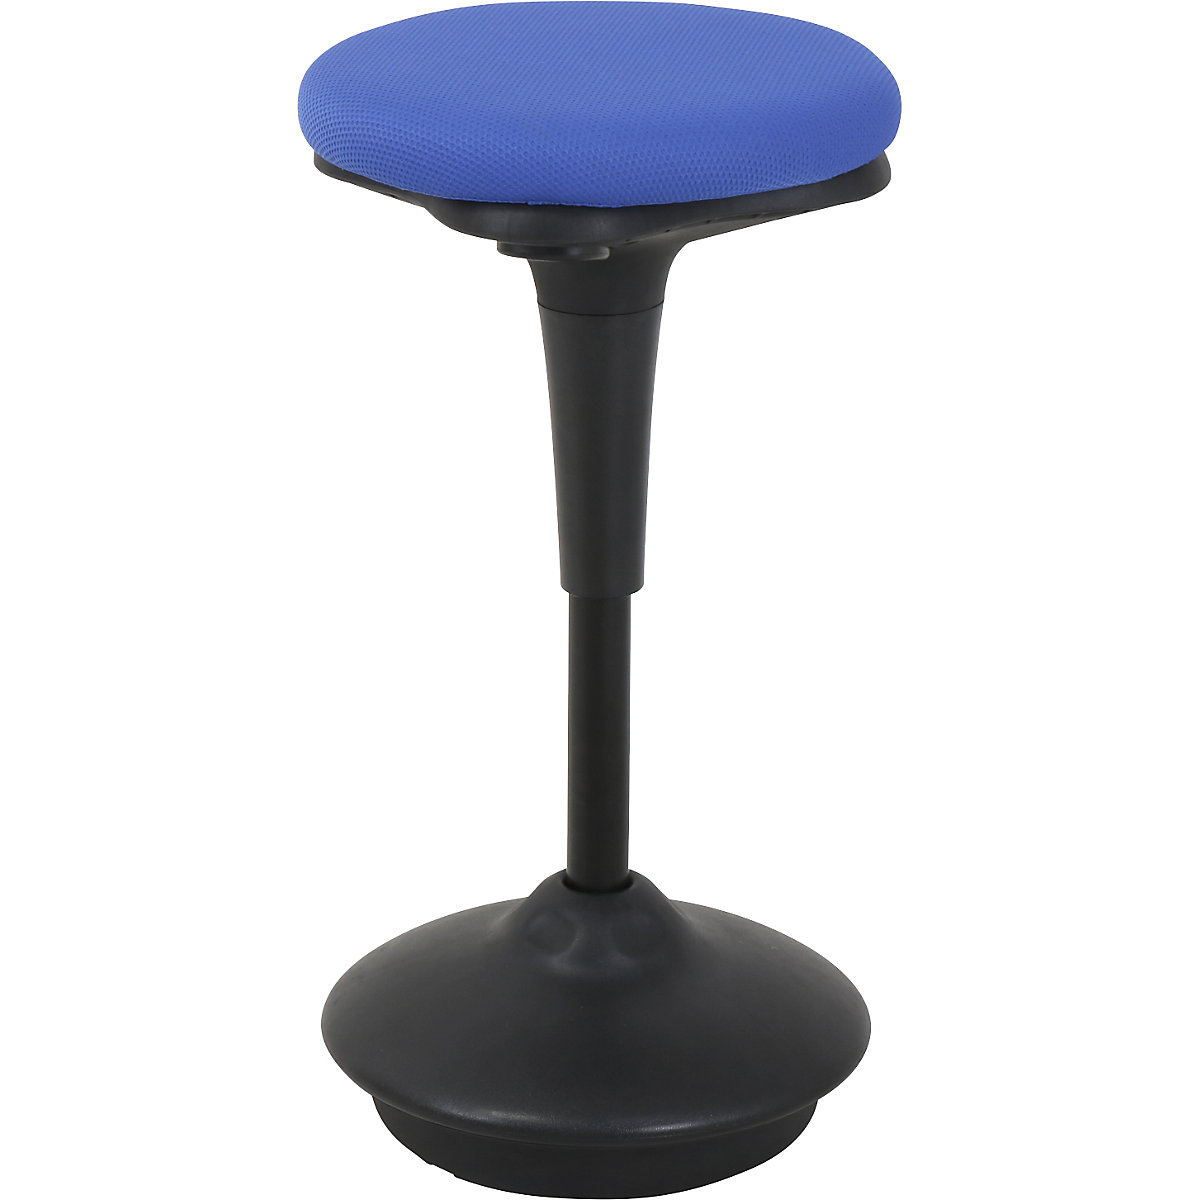 Regginpiedi 6131 – Twinco, sedile rotondo Ø 340 mm, rivestimento blu-6